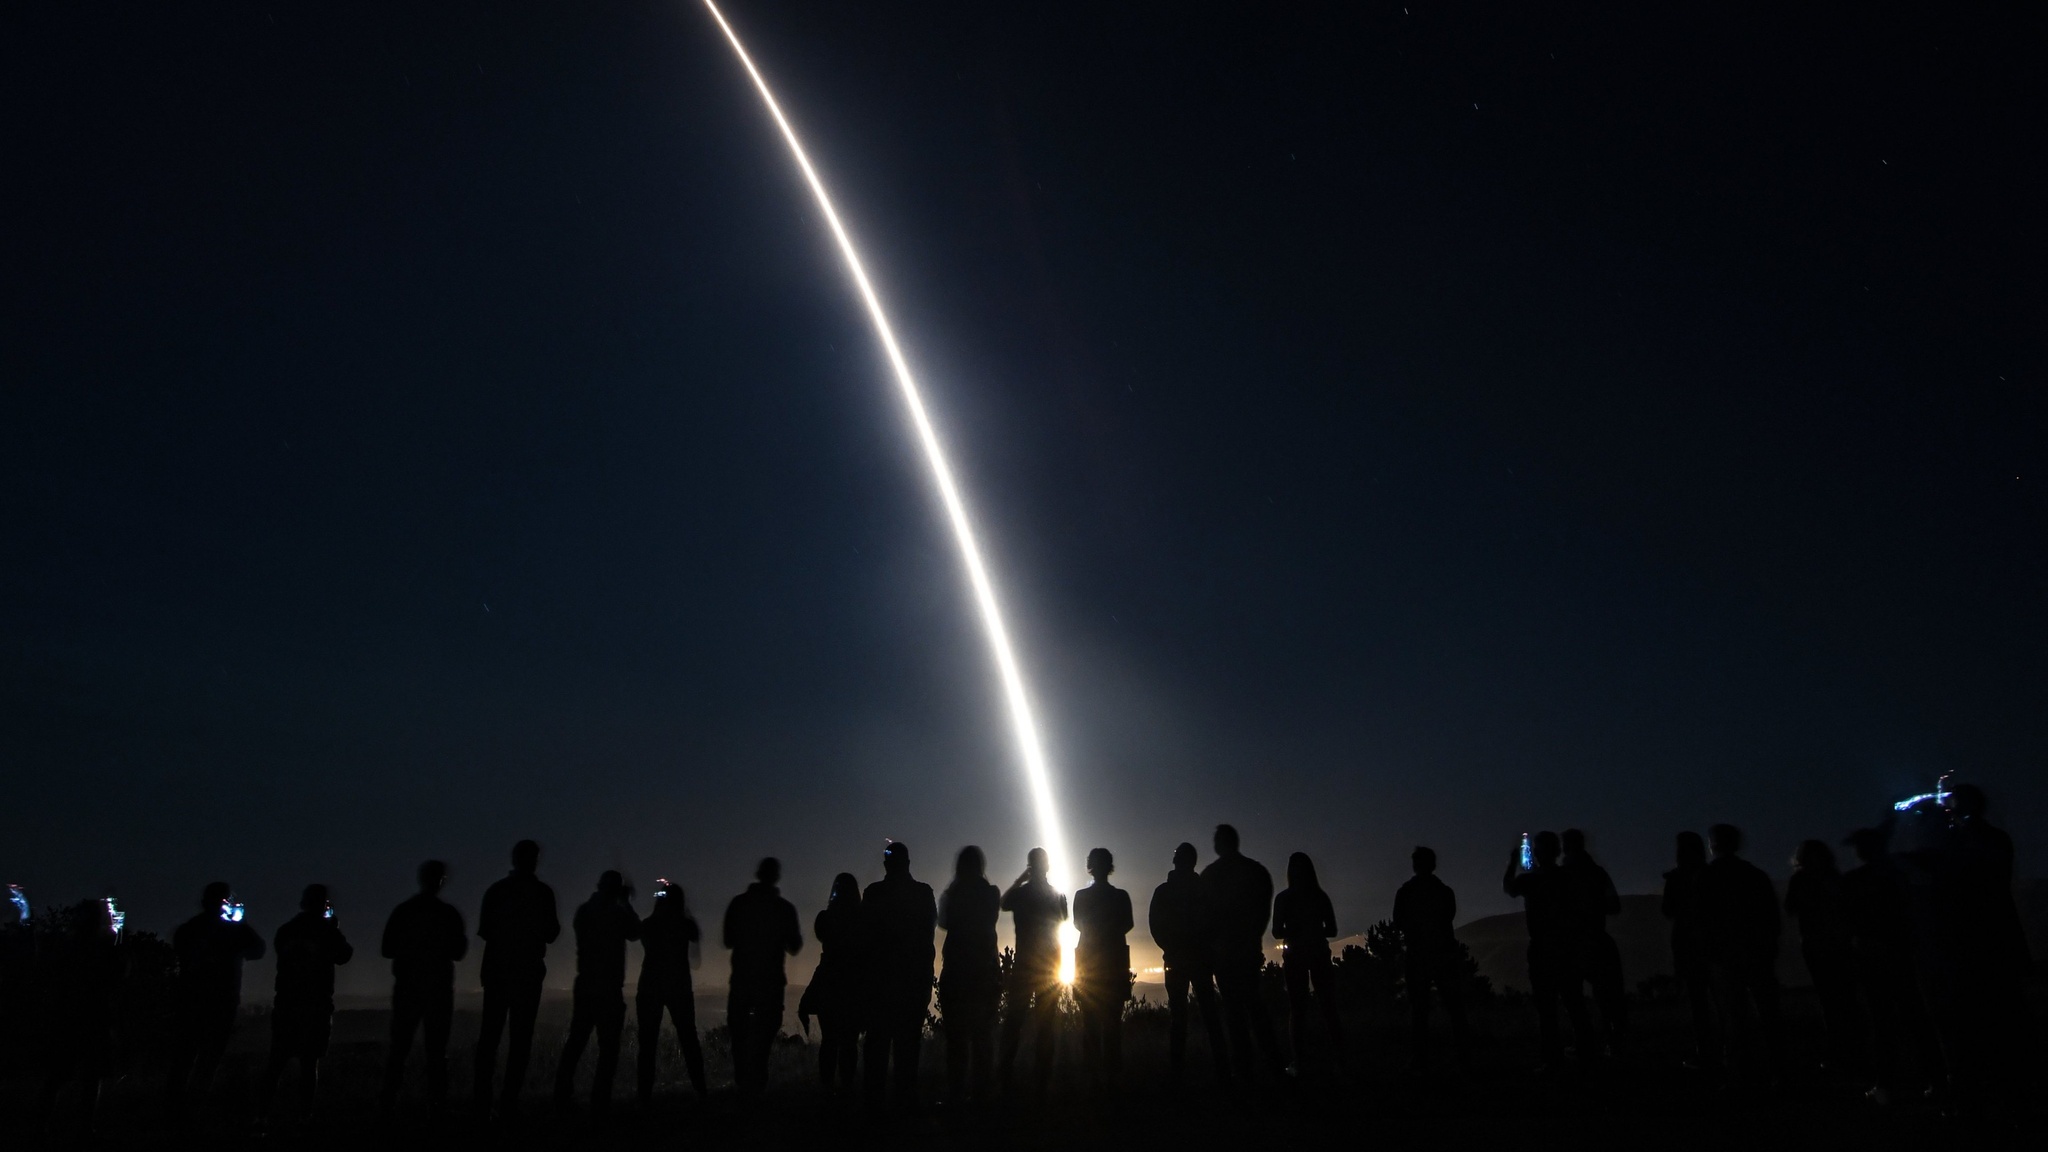 Mỹ phóng tên lửa đạn đạo liên lục địa